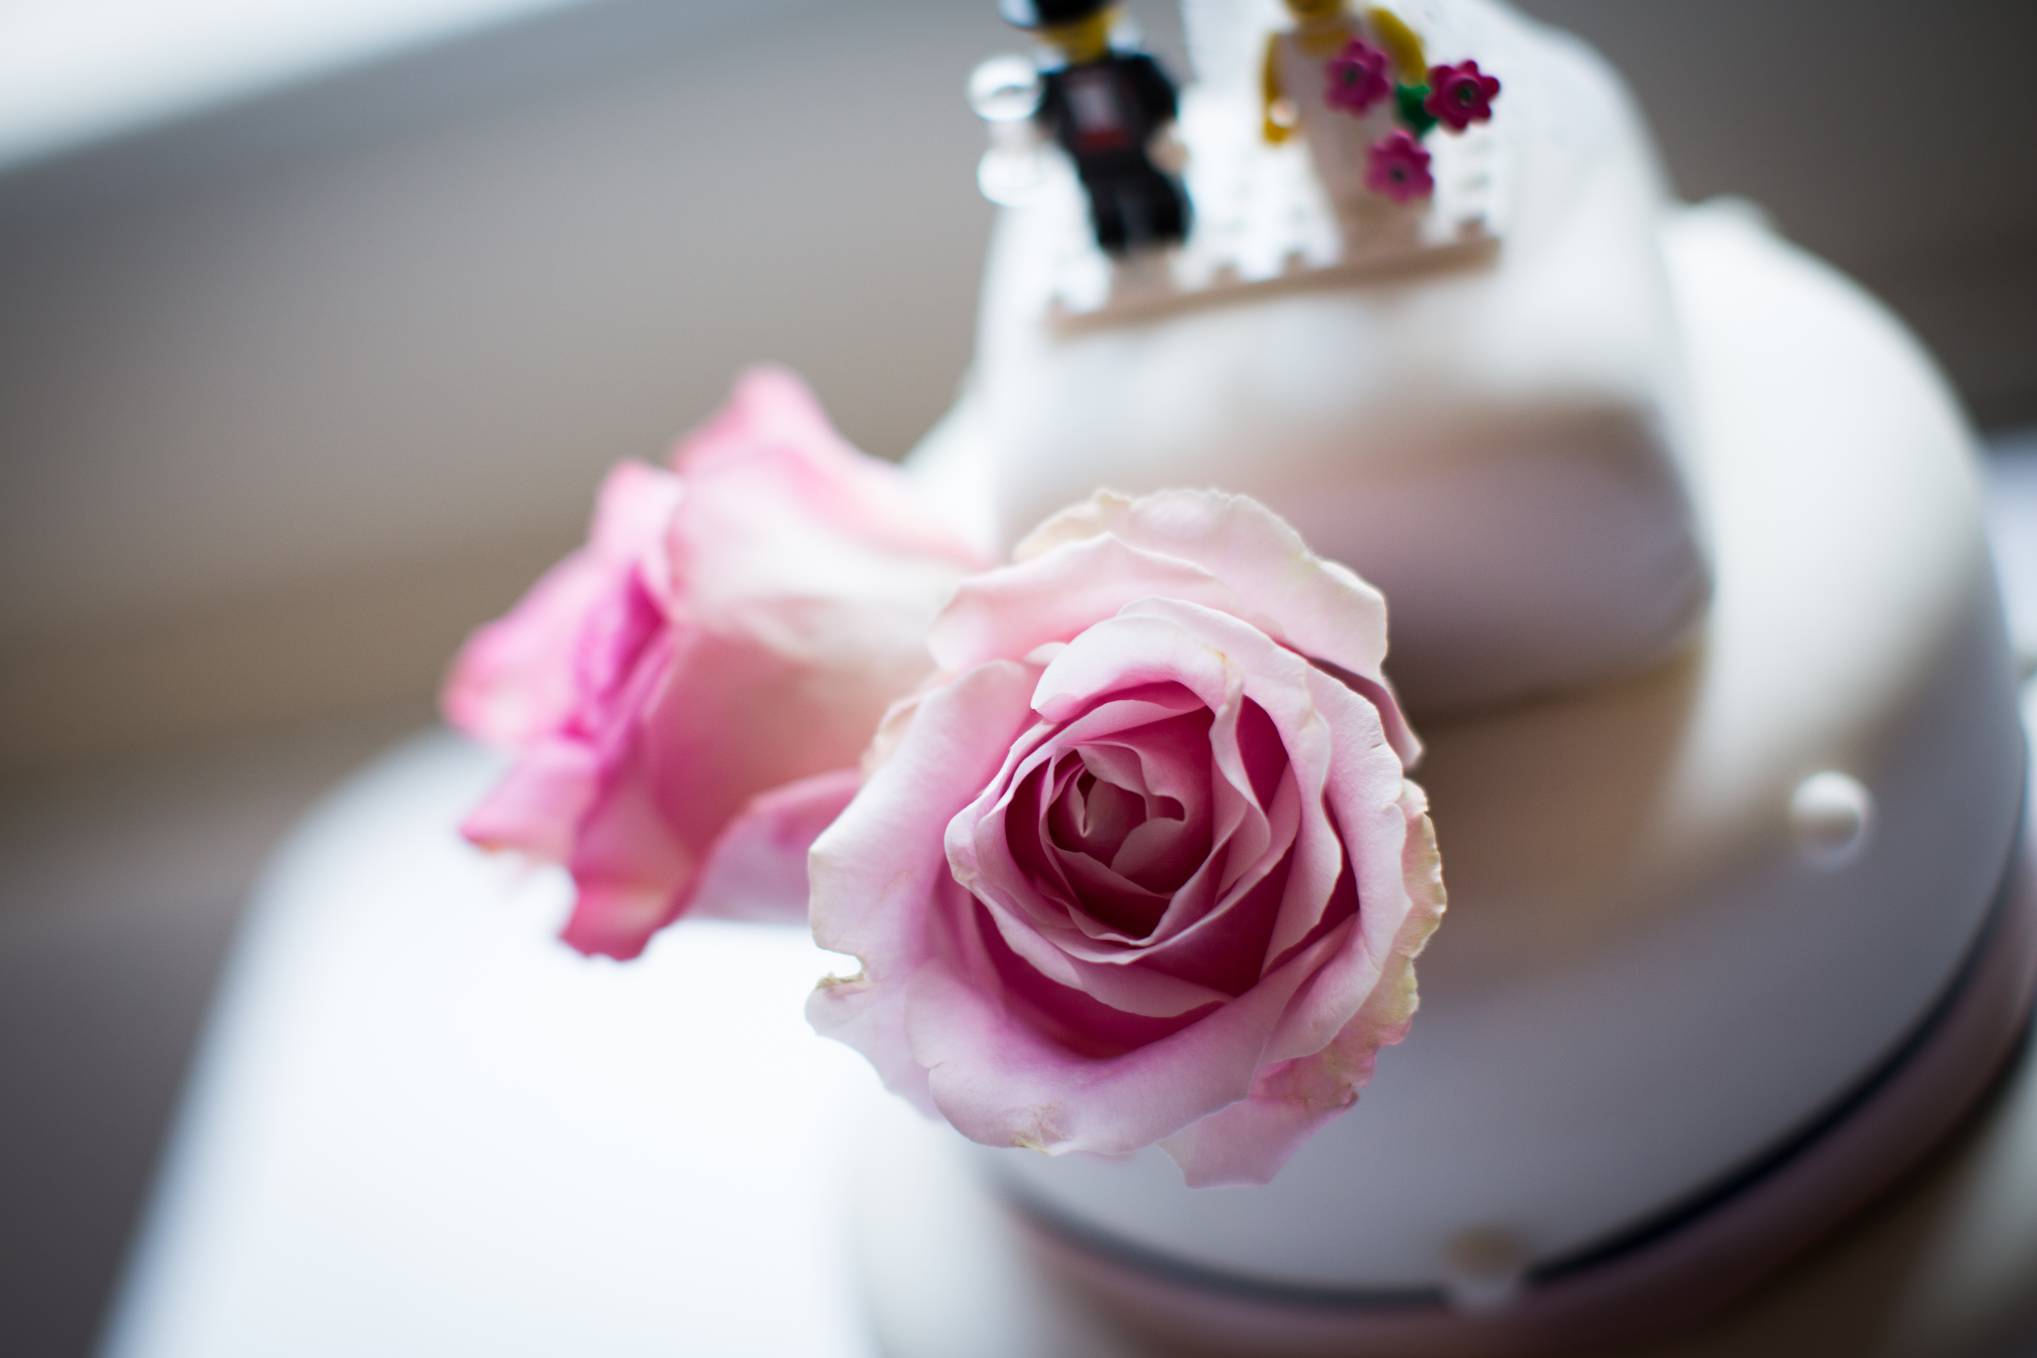 Roses on wedding cake